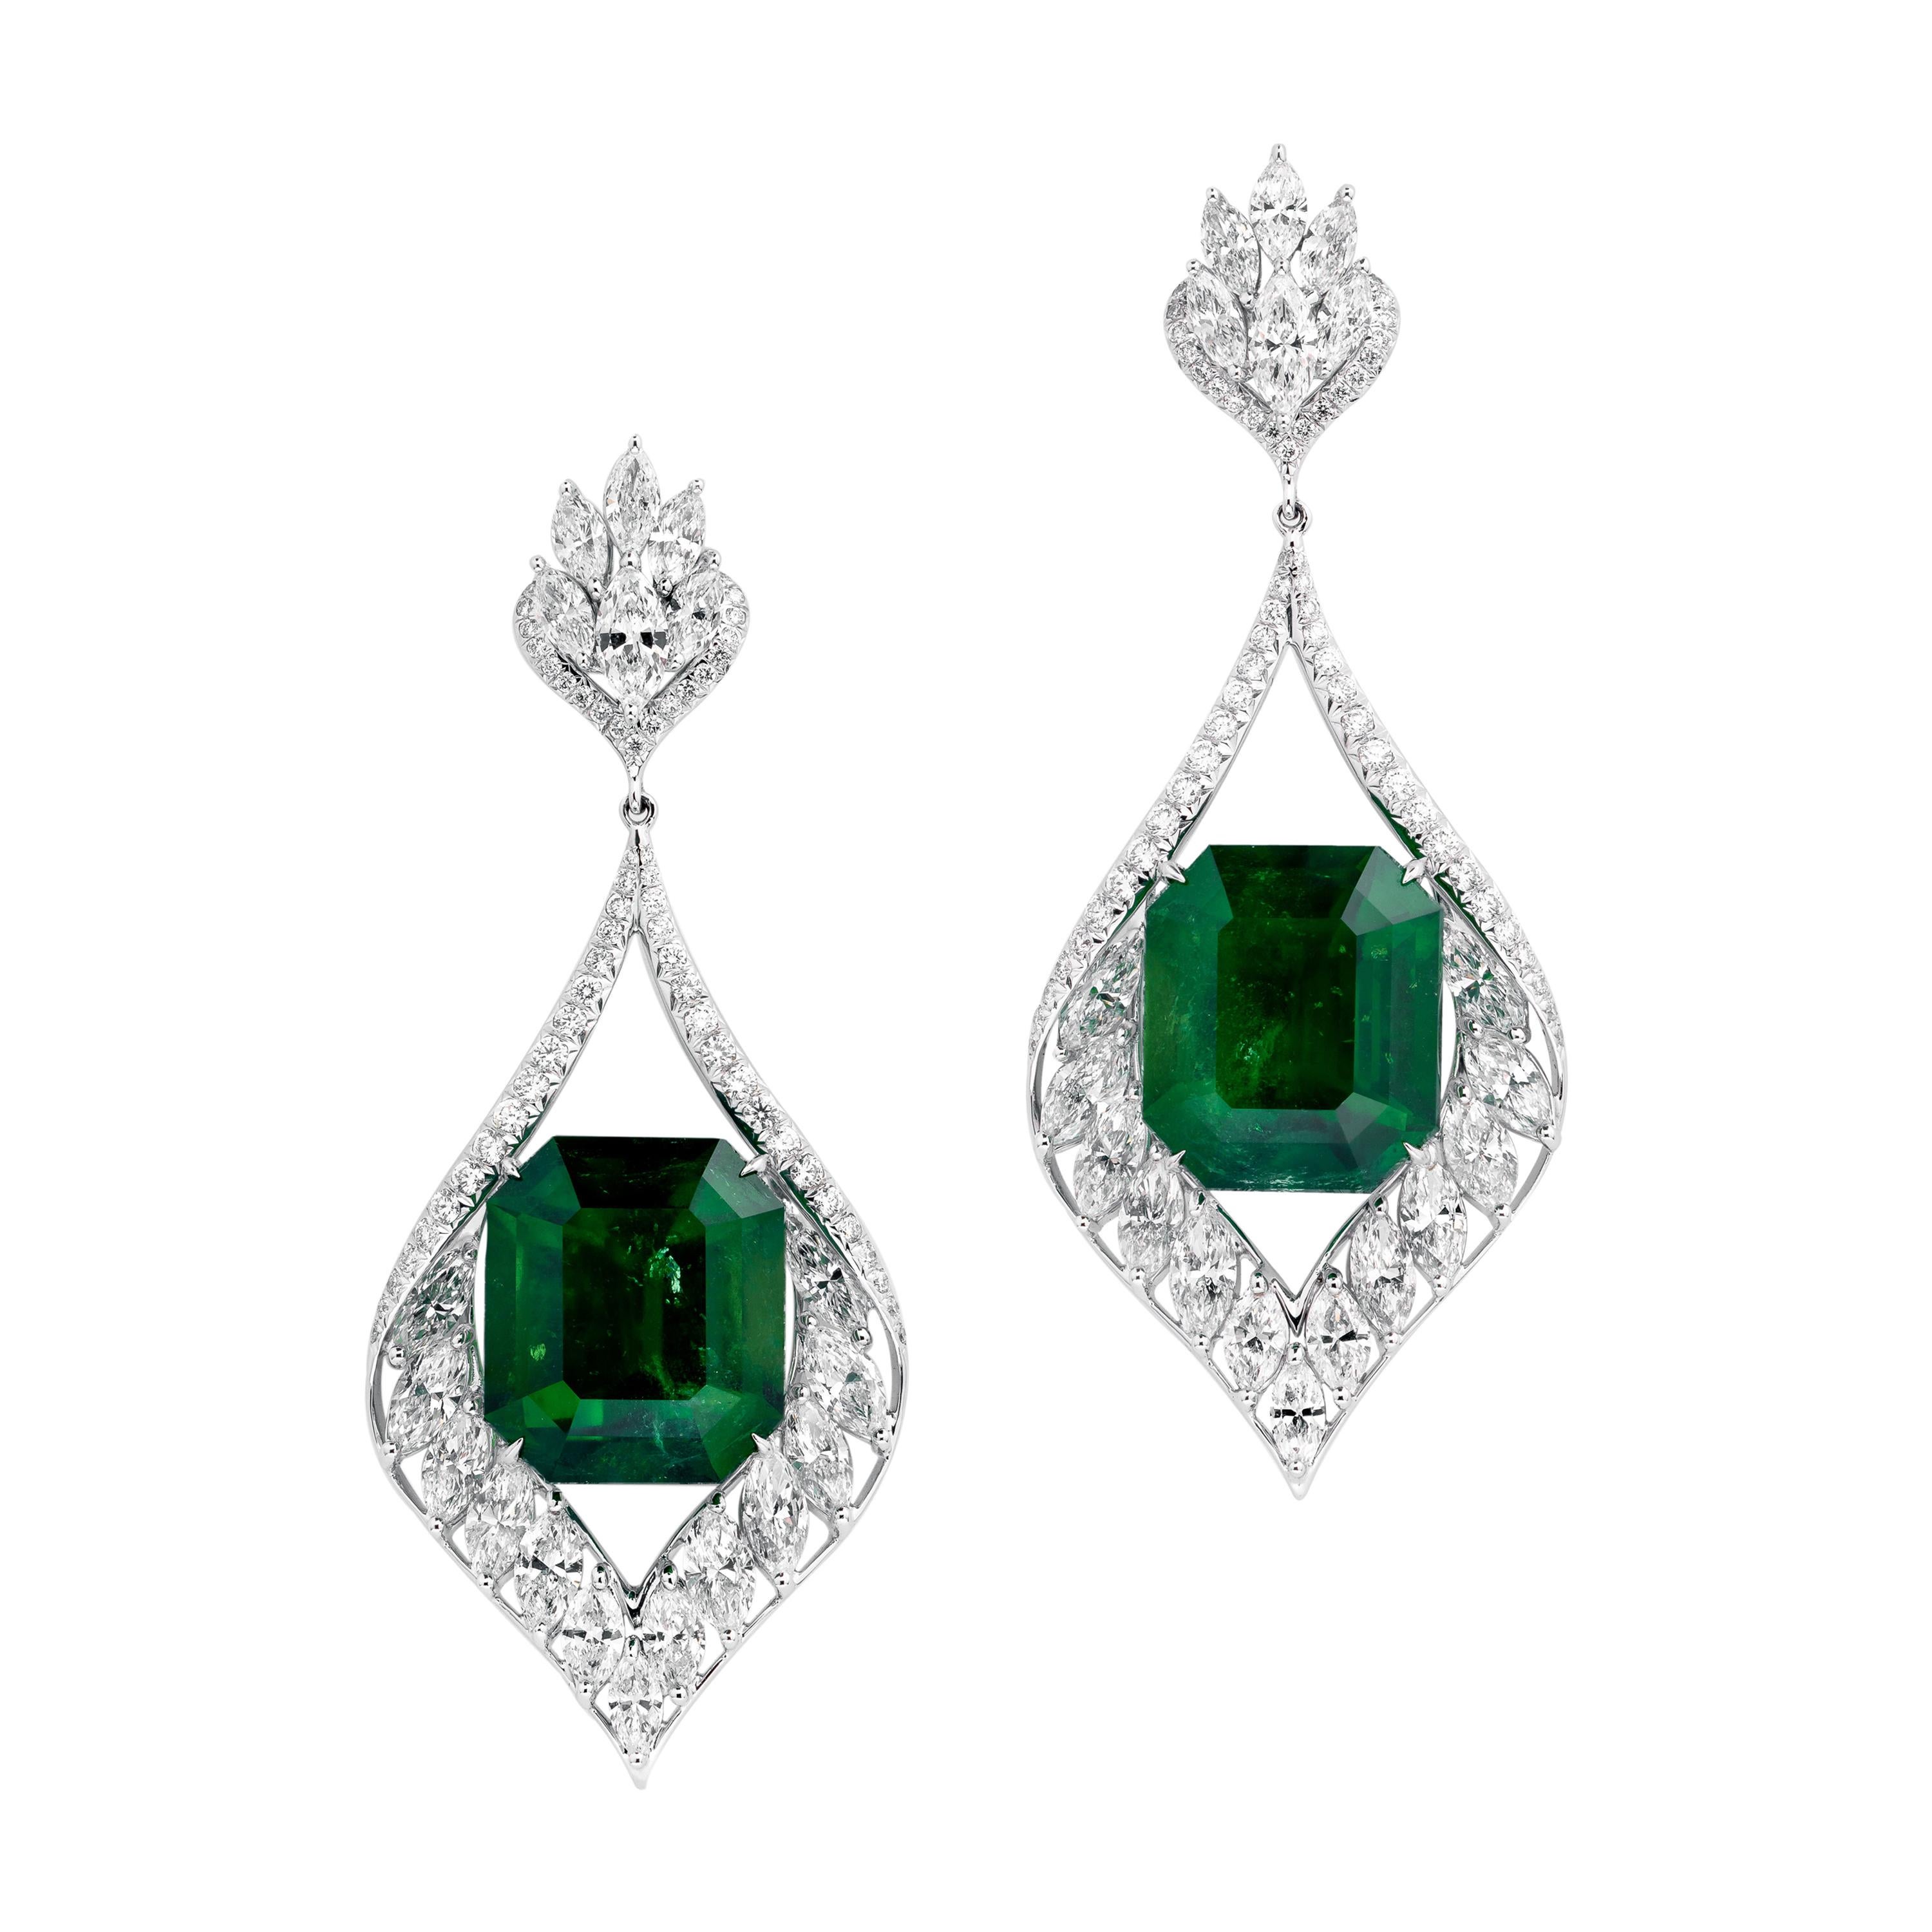 Gubelin Certified 42.62 Carat Colombian Emerald Diamond Earrings in 18K Gold For Sale